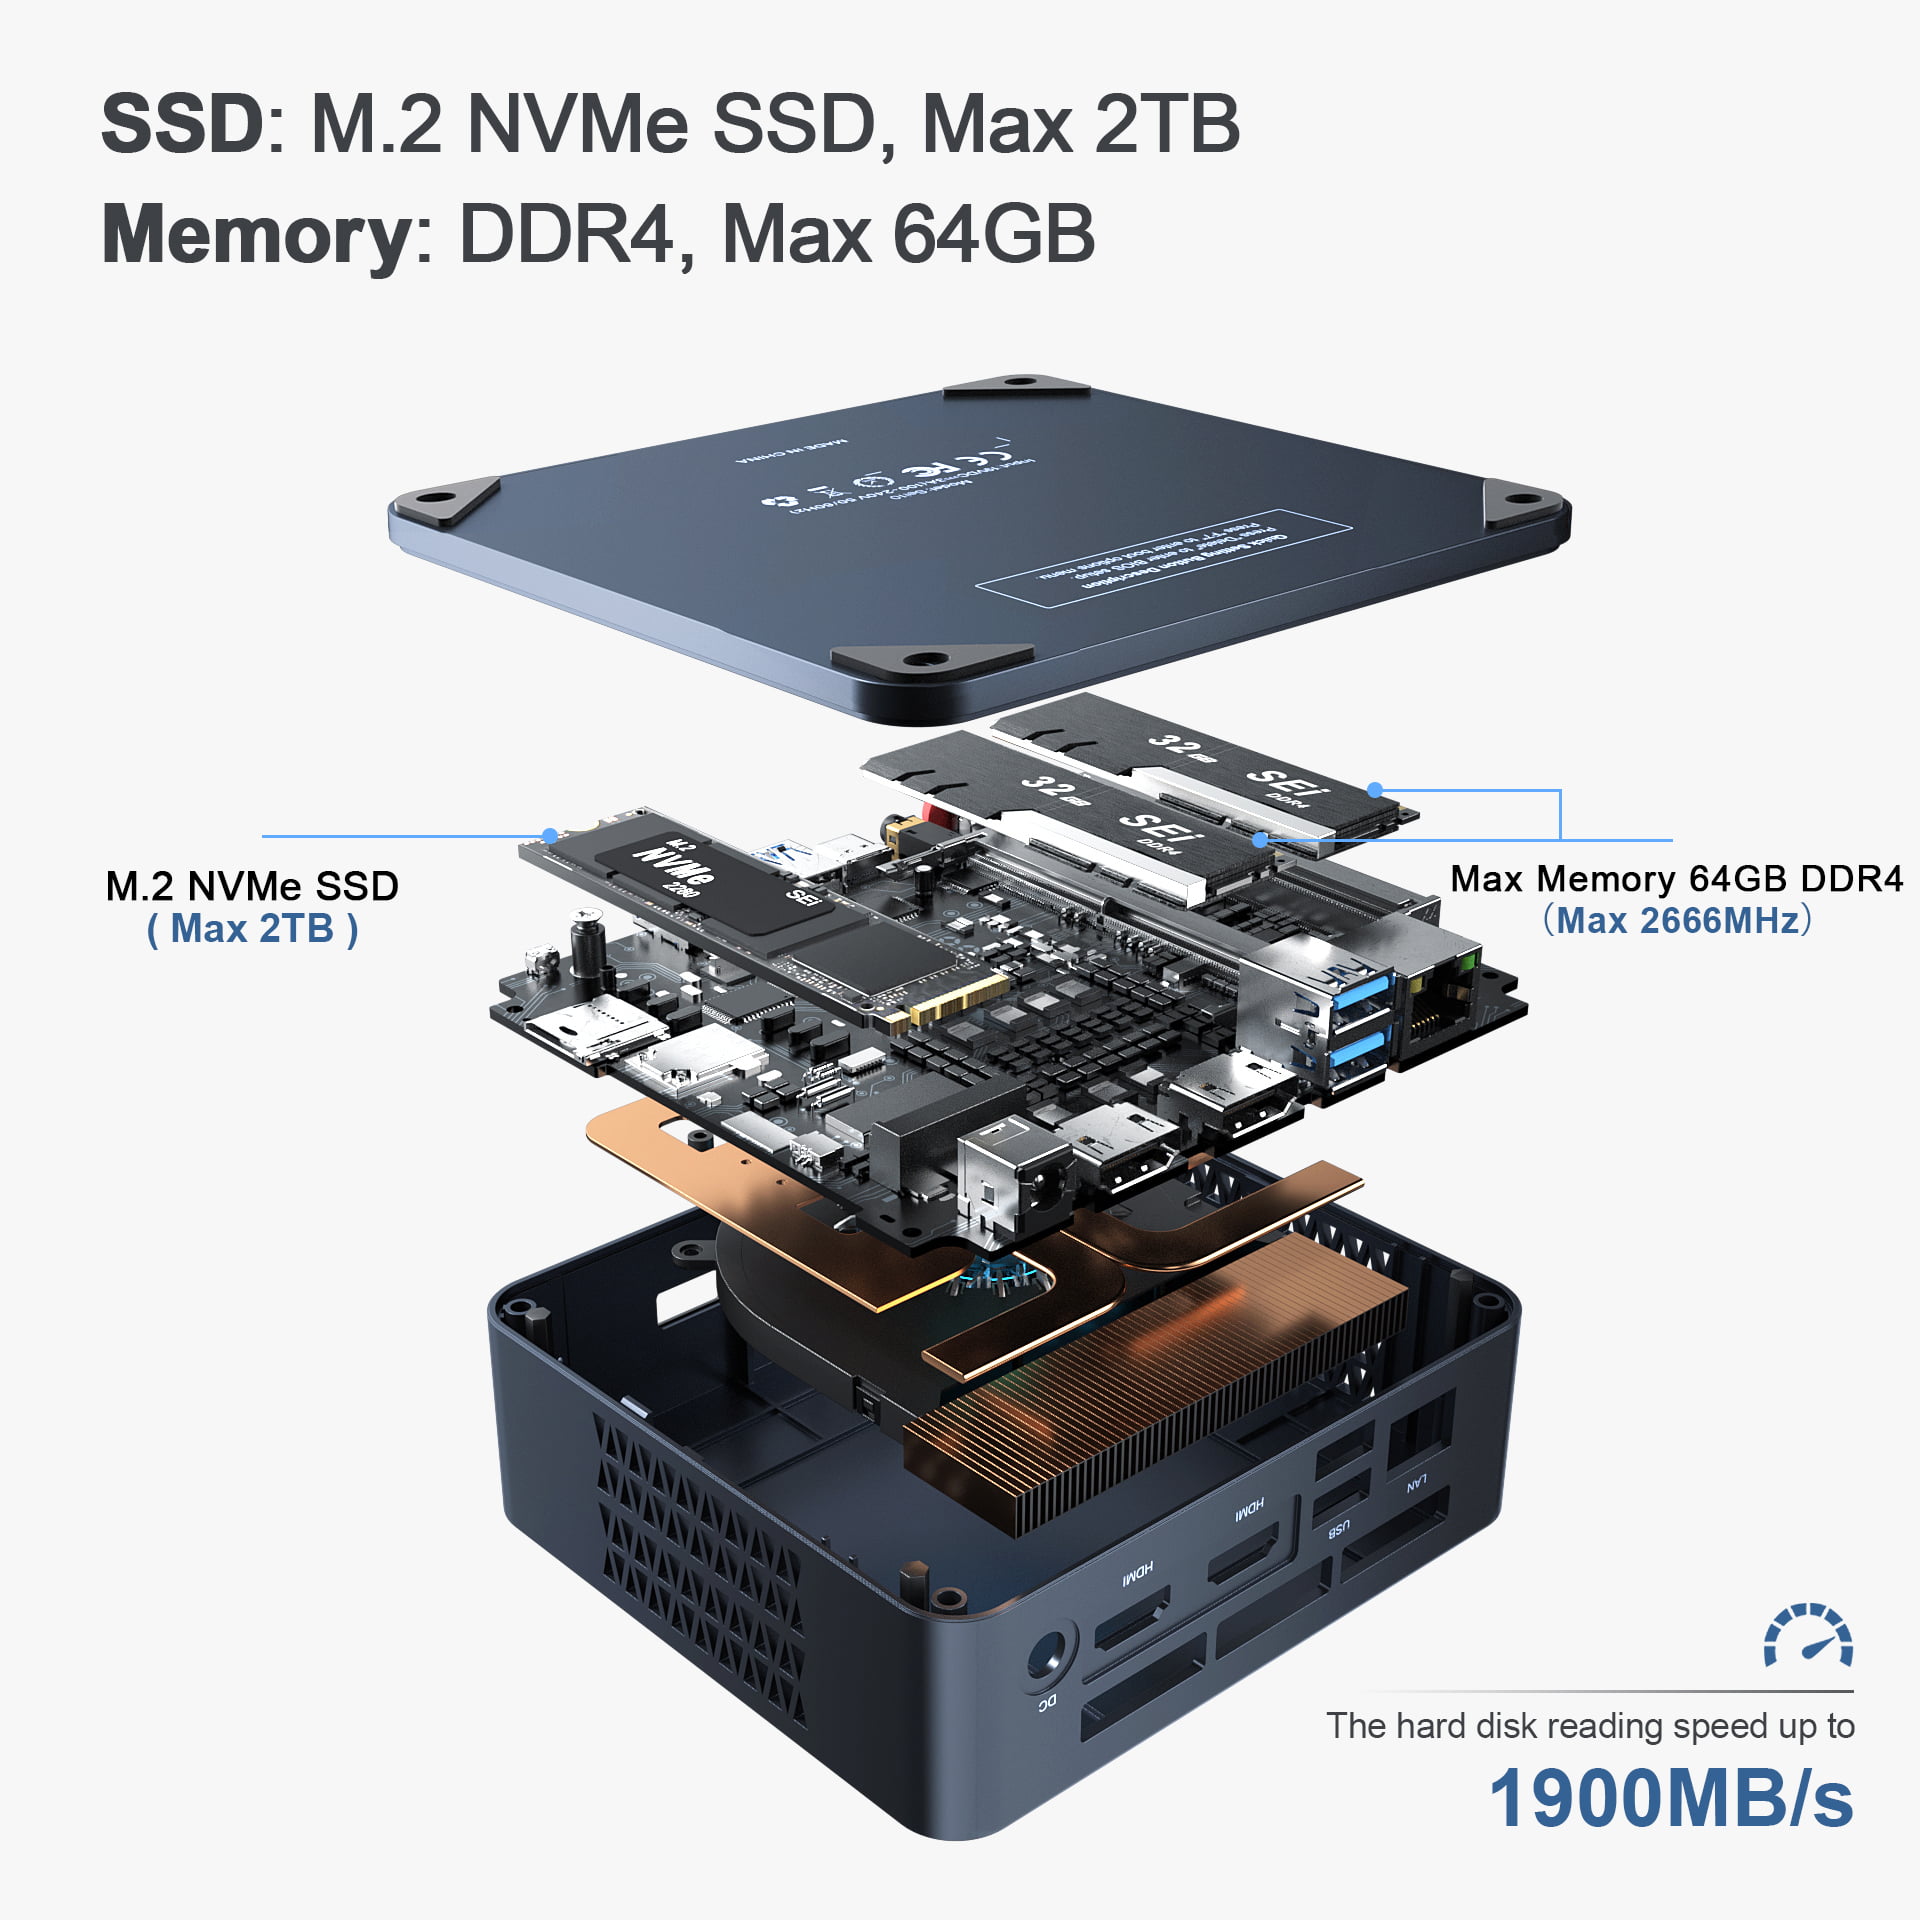 512GB SSD Dual 4K HDMI Mini Desktop Computer 25W High Performance,USB3.0 UP to 4.1GHz Beelink SEI10 Mini PC Windows 10 Pro,Intel 10th Gen i3-10110U WiFi 6 16GB DDR4 BT5.0